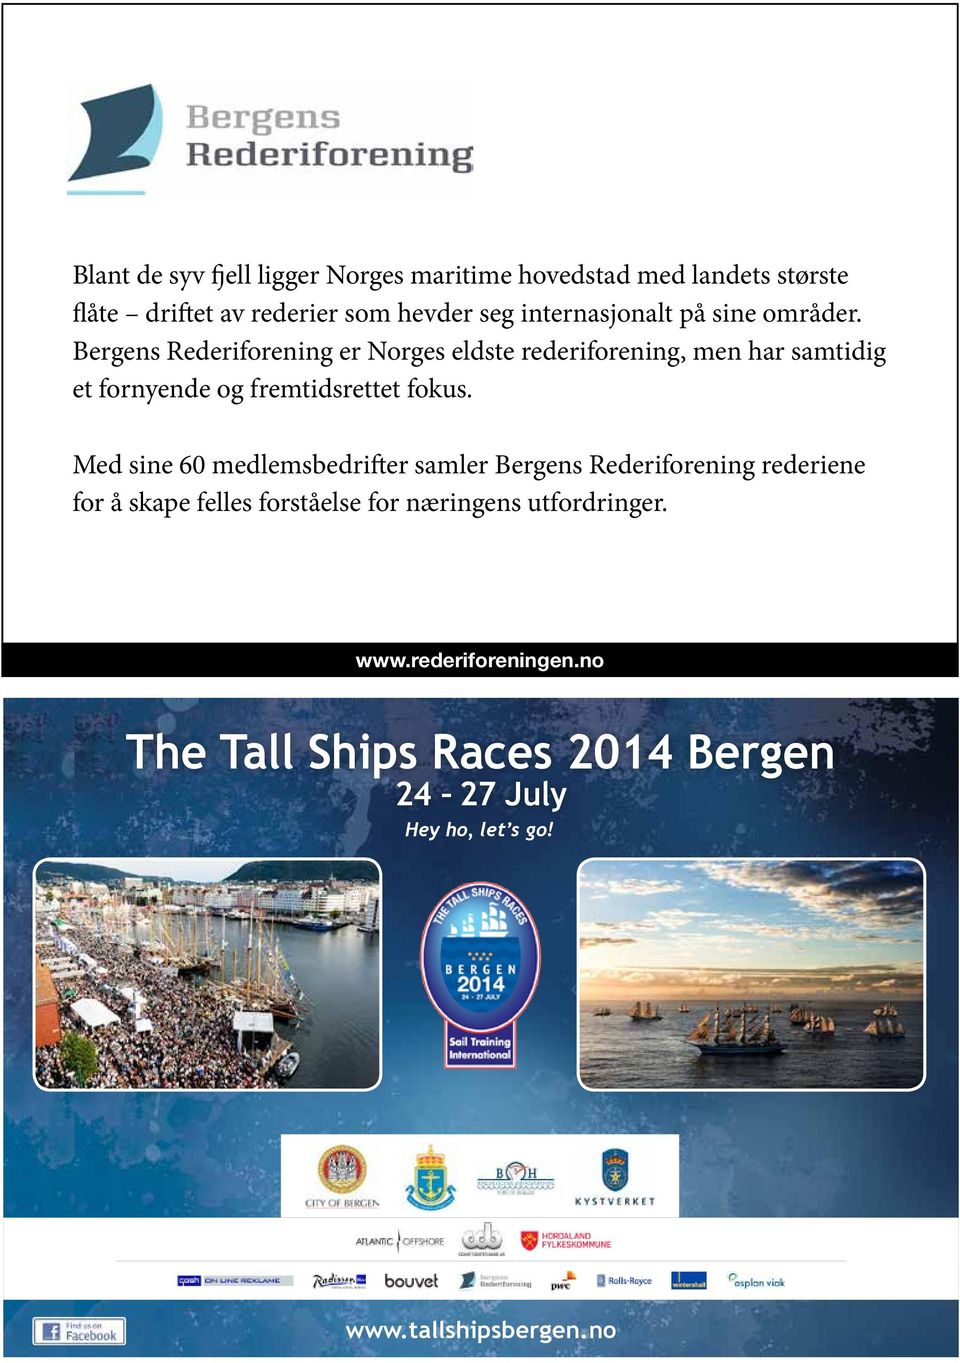 Bergens Rederiforening er Norges eldste rederiforening, men har samtidig et fornyende og fremtidsrettet fokus.